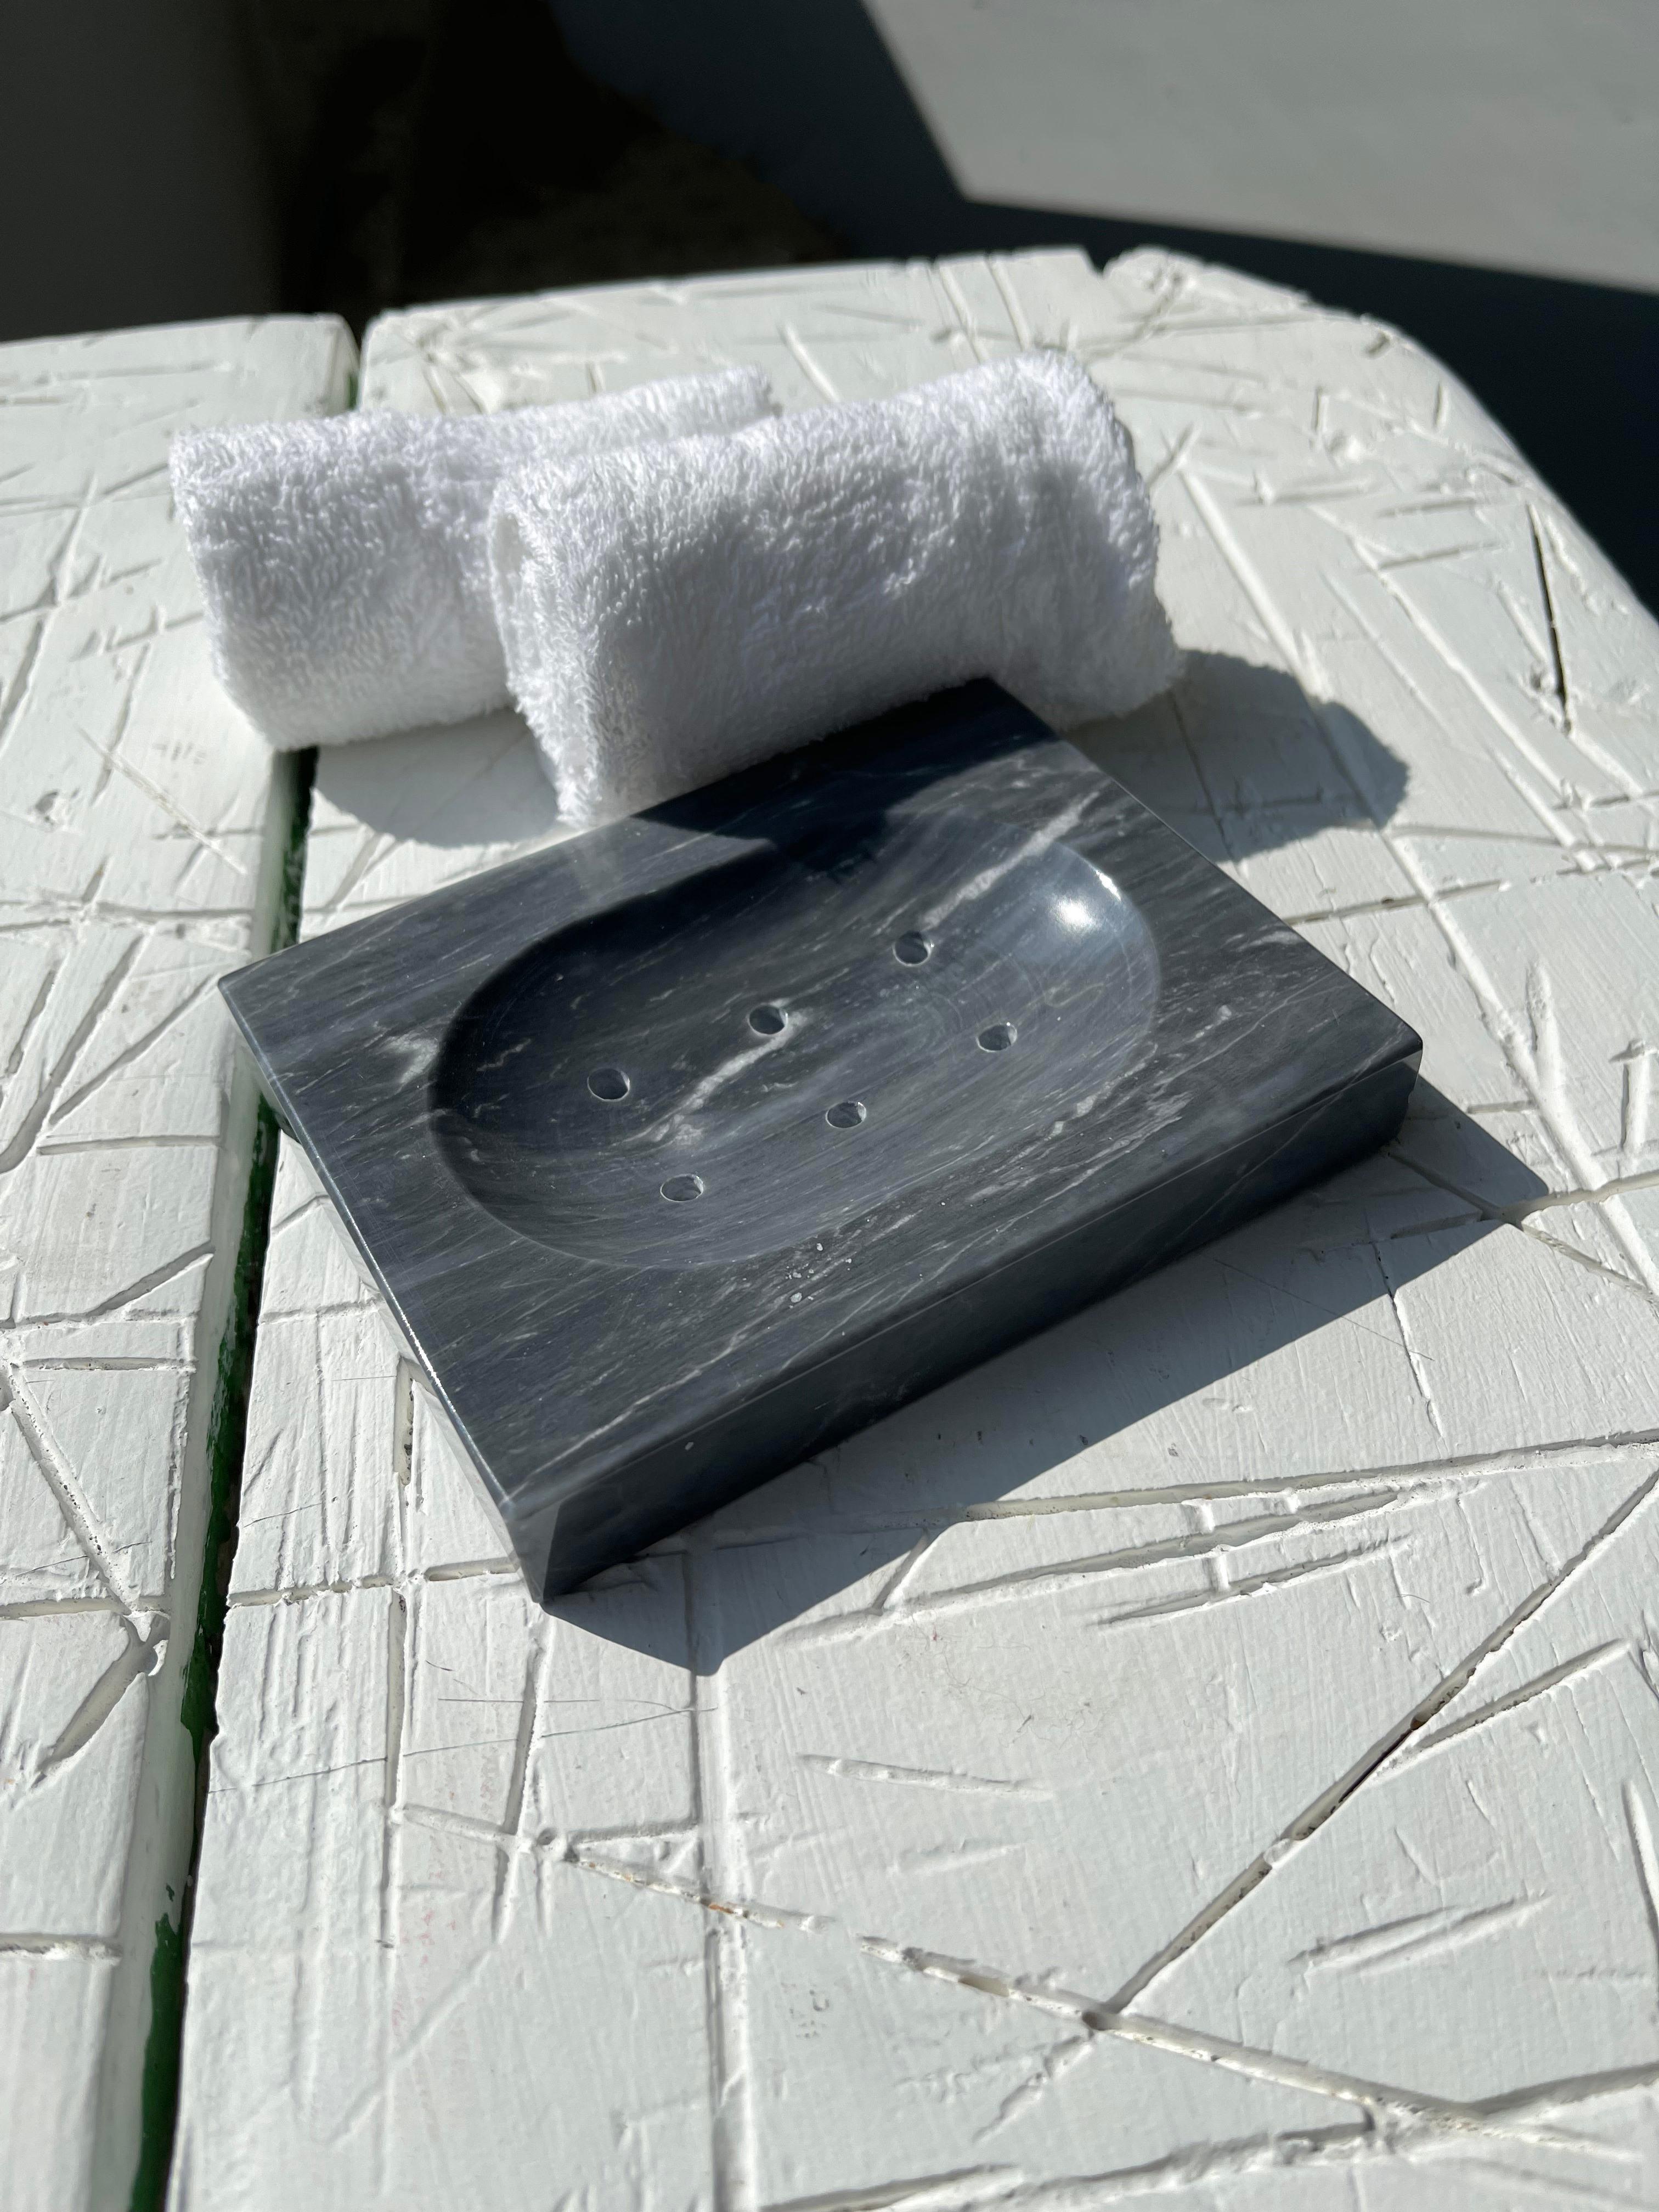 Quadratische Seifenschale aus grauem Bardiglio-Marmor mit kleinen Löchern für Wasser.

Jedes Stück ist in gewisser Weise einzigartig (da jeder Marmorblock unterschiedliche Maserungen und Schattierungen aufweist) und wird in Italien handgefertigt.